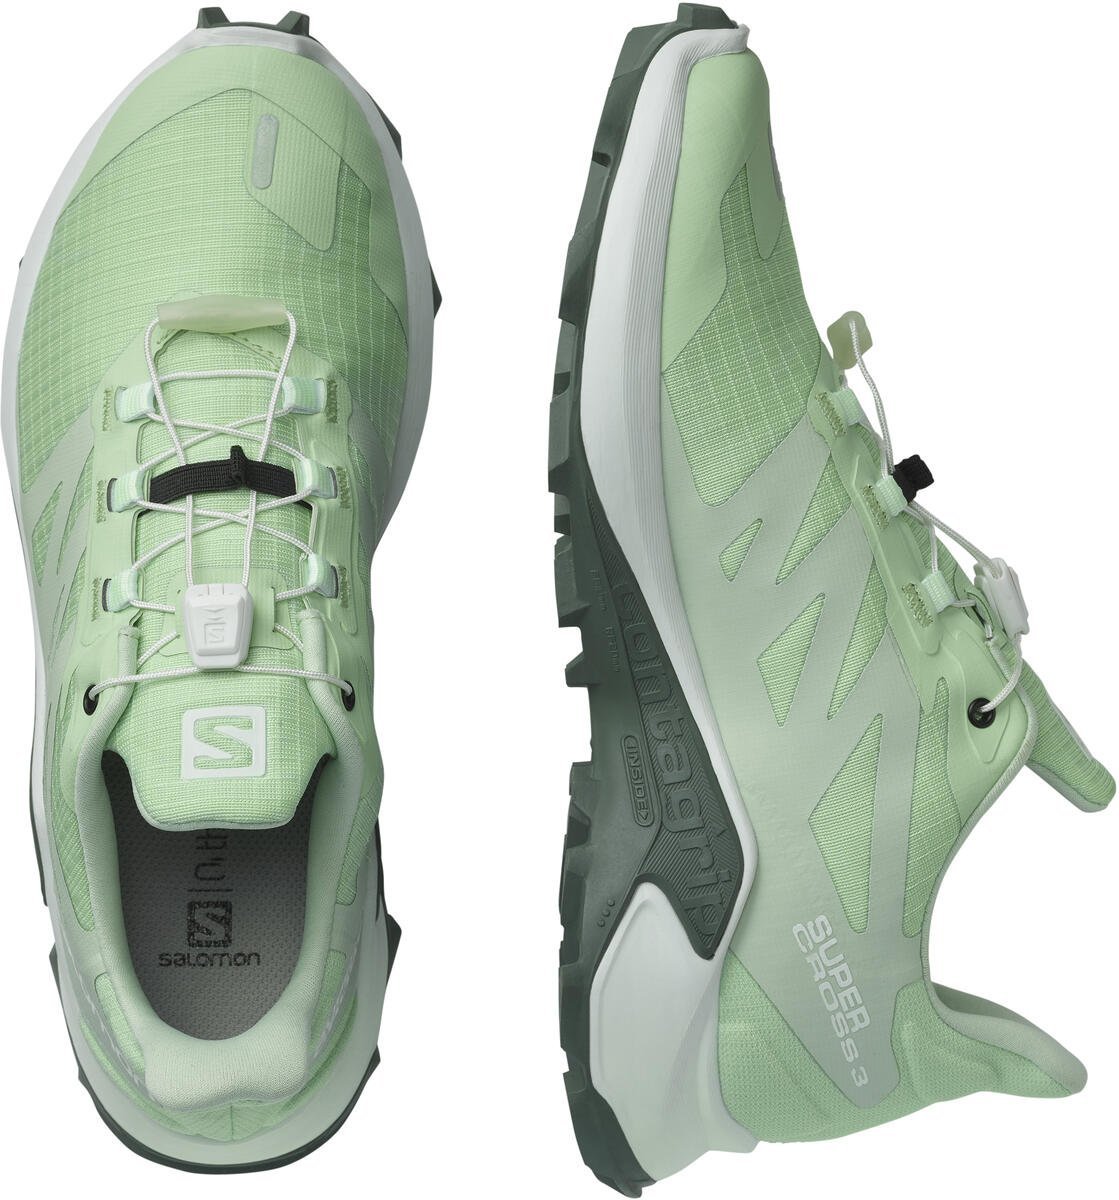 Topánky Salomon SUPERCROSS 3 W - zelená